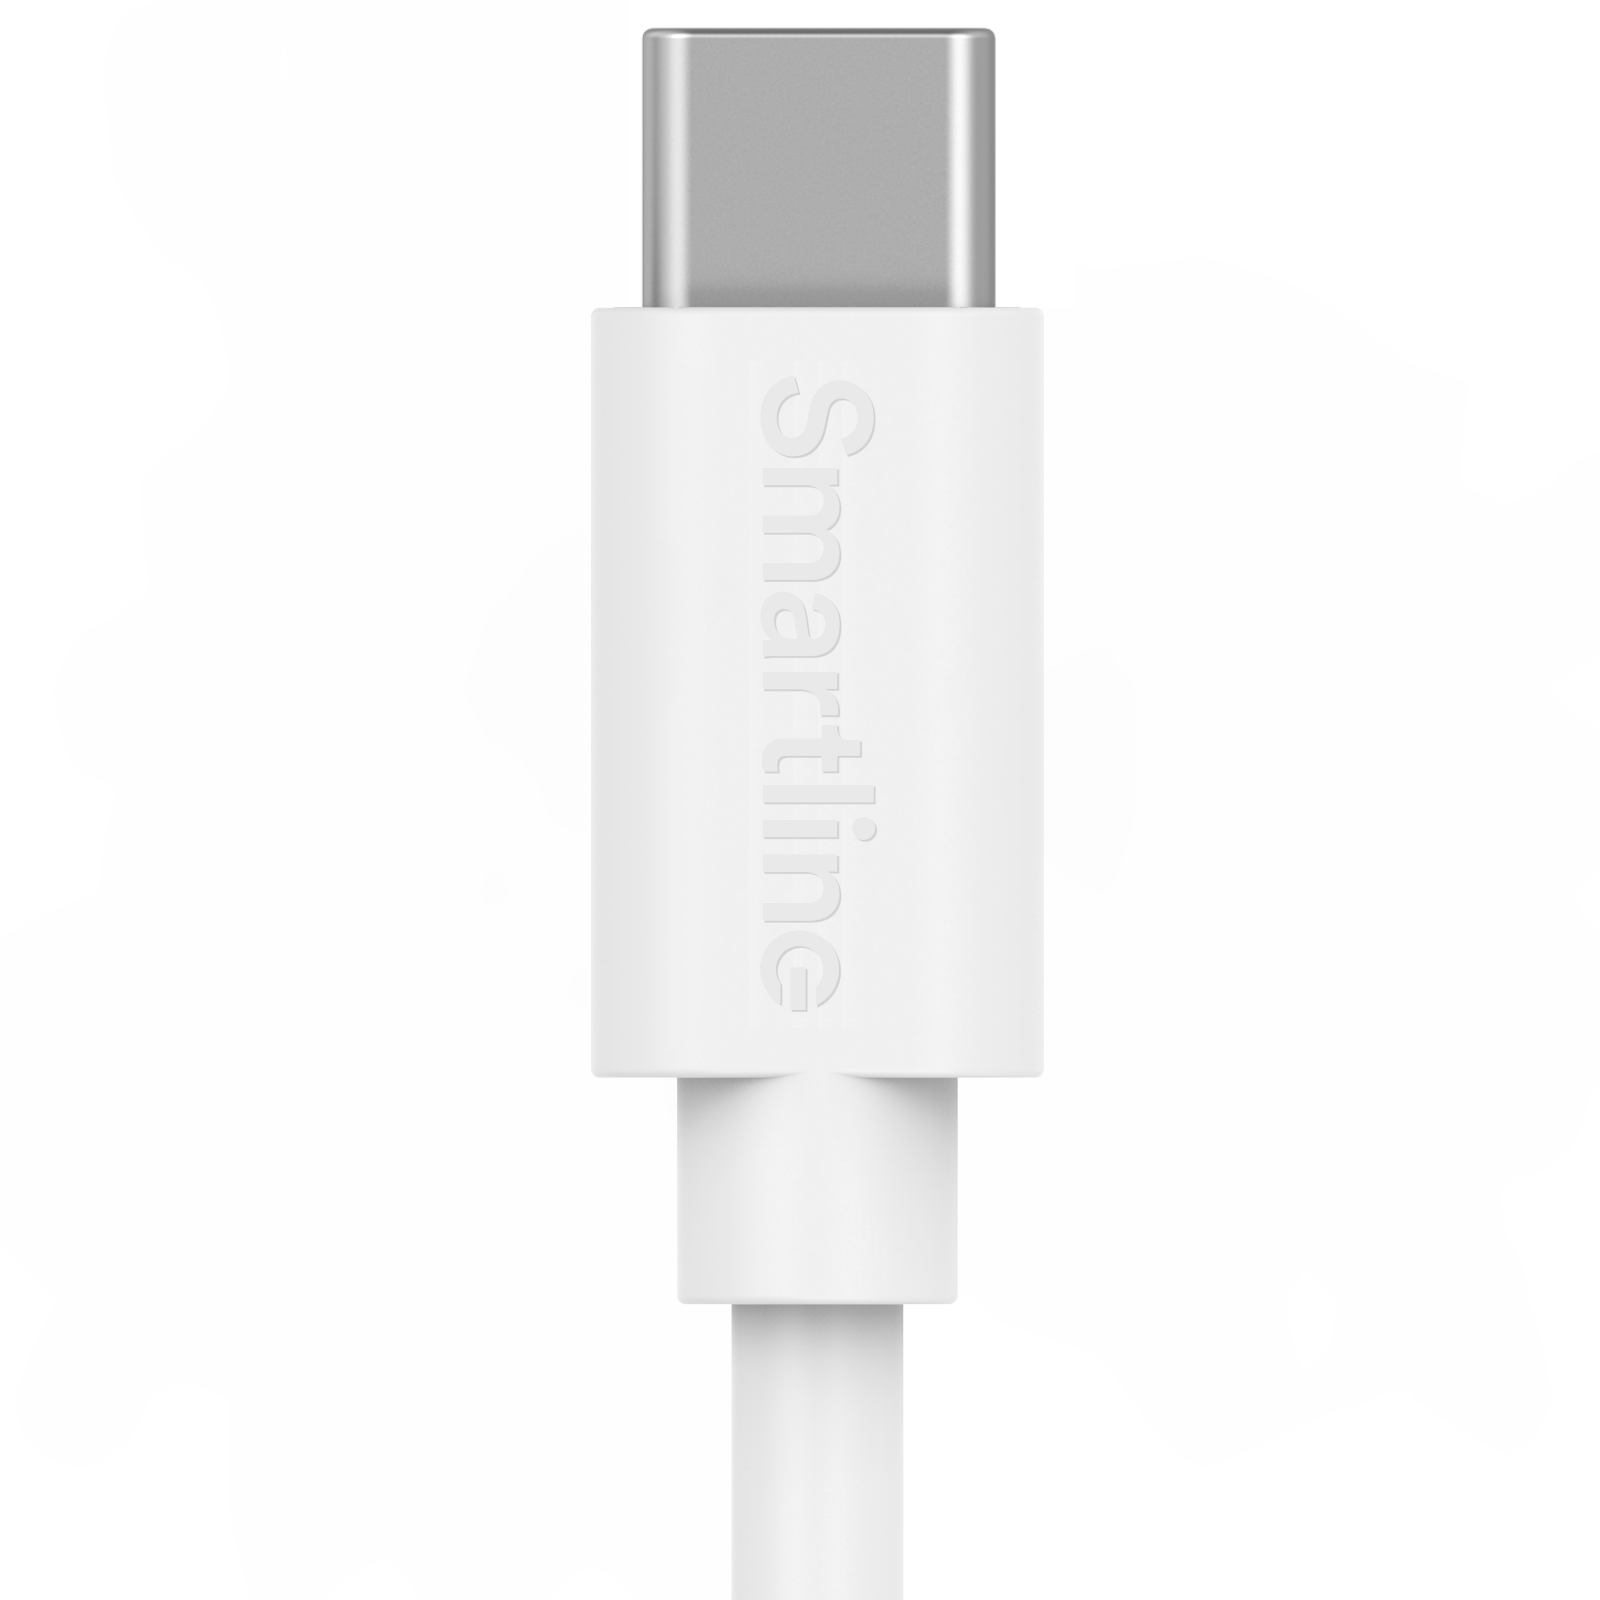 Zwei-in-eins-Ladegerät für Xiaomi-Handys -  2m-Kabel und Wandladegerät USB-C - Smartline